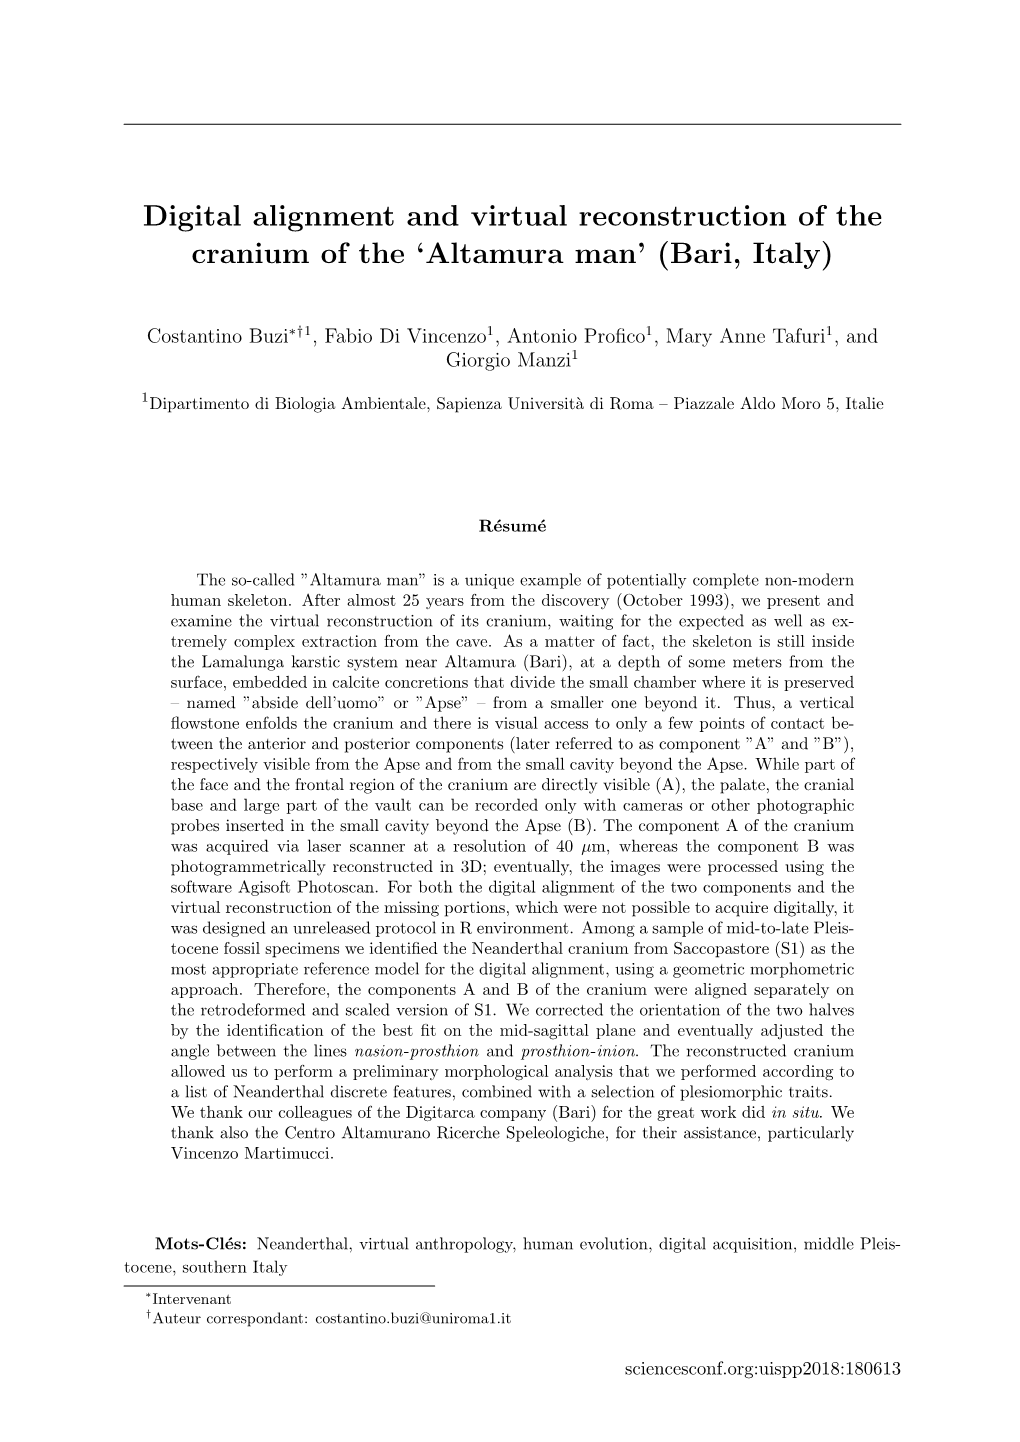 Digital Alignment and Virtual Reconstruction of the Cranium of the 'Altamura Man' (Bari, Italy)